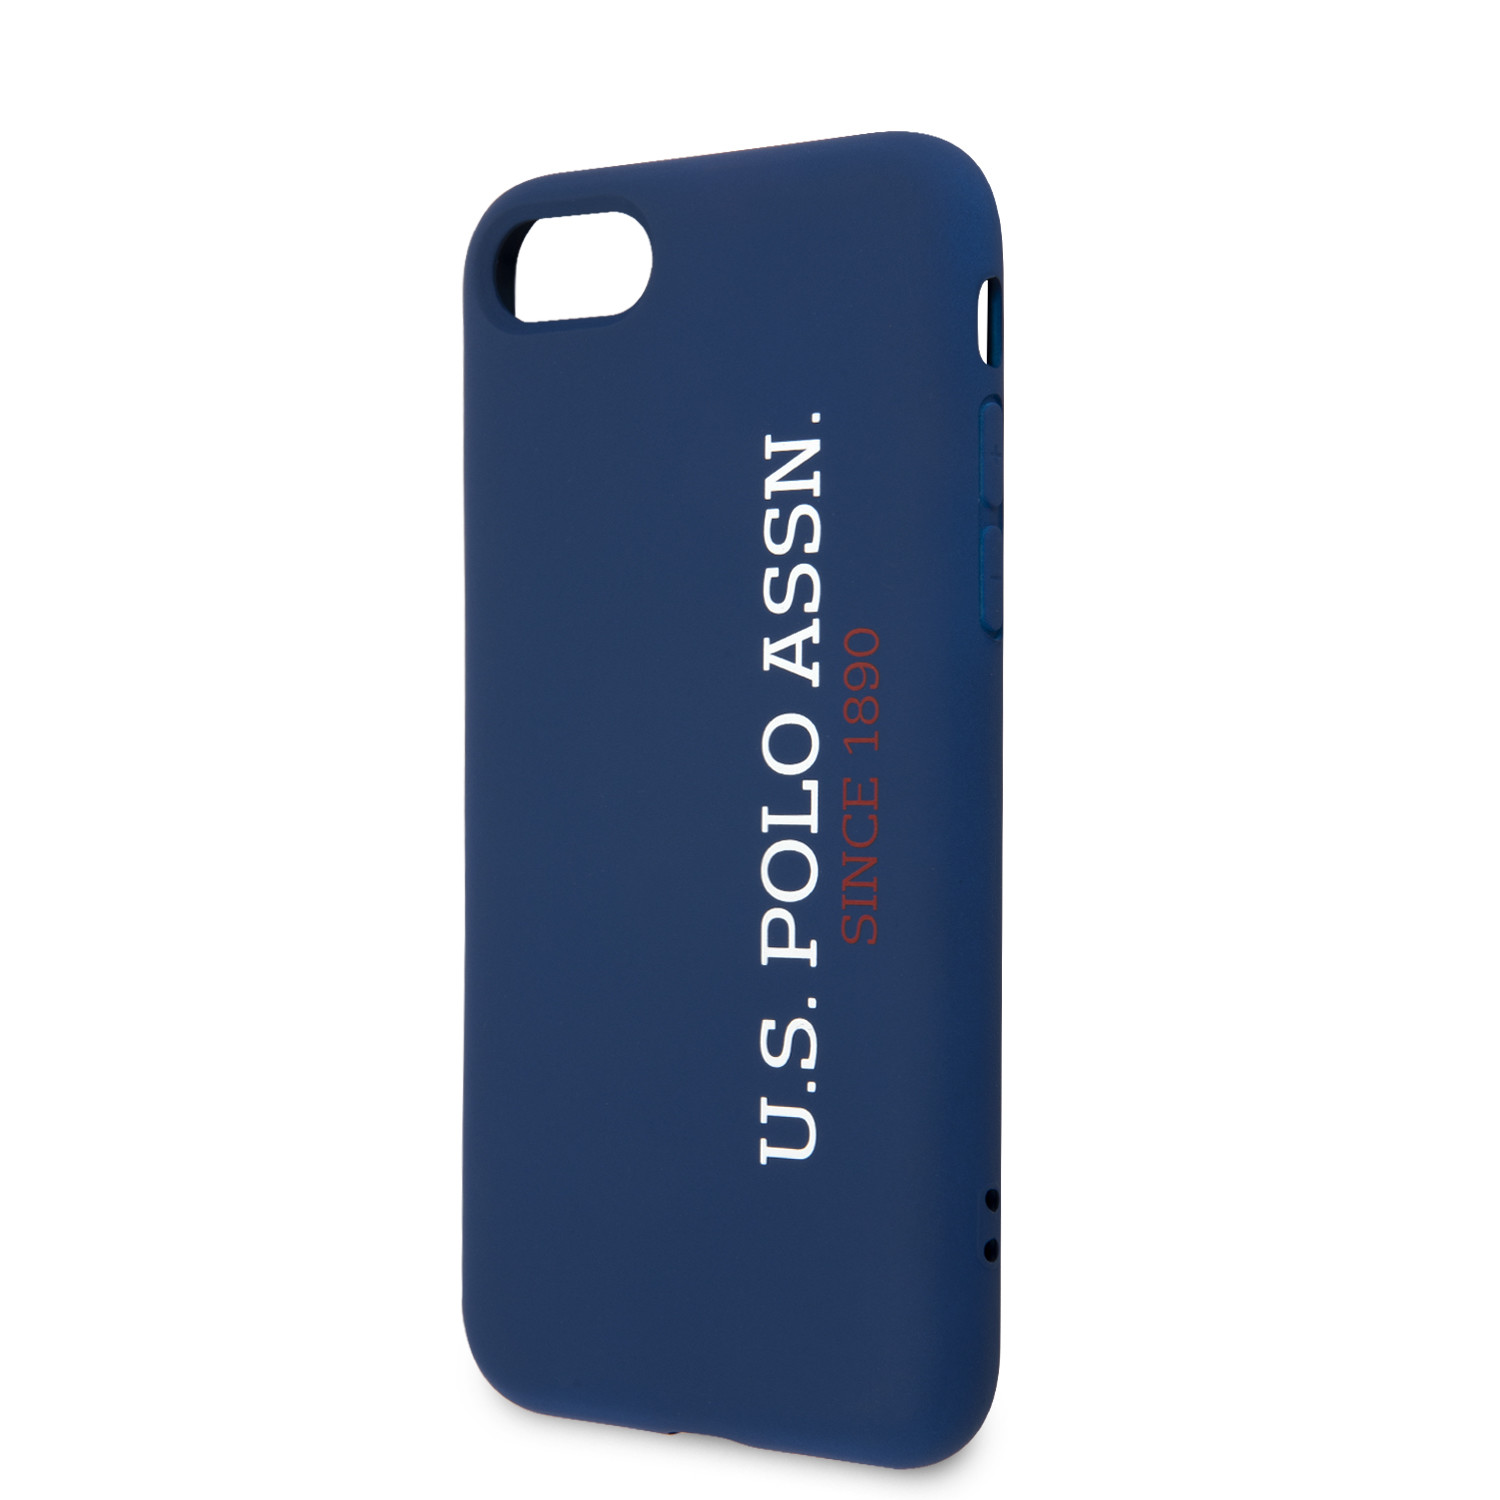 Husa Cover US Polo Silicone pentru iPhone 7/8/SE2 Albastru thumb